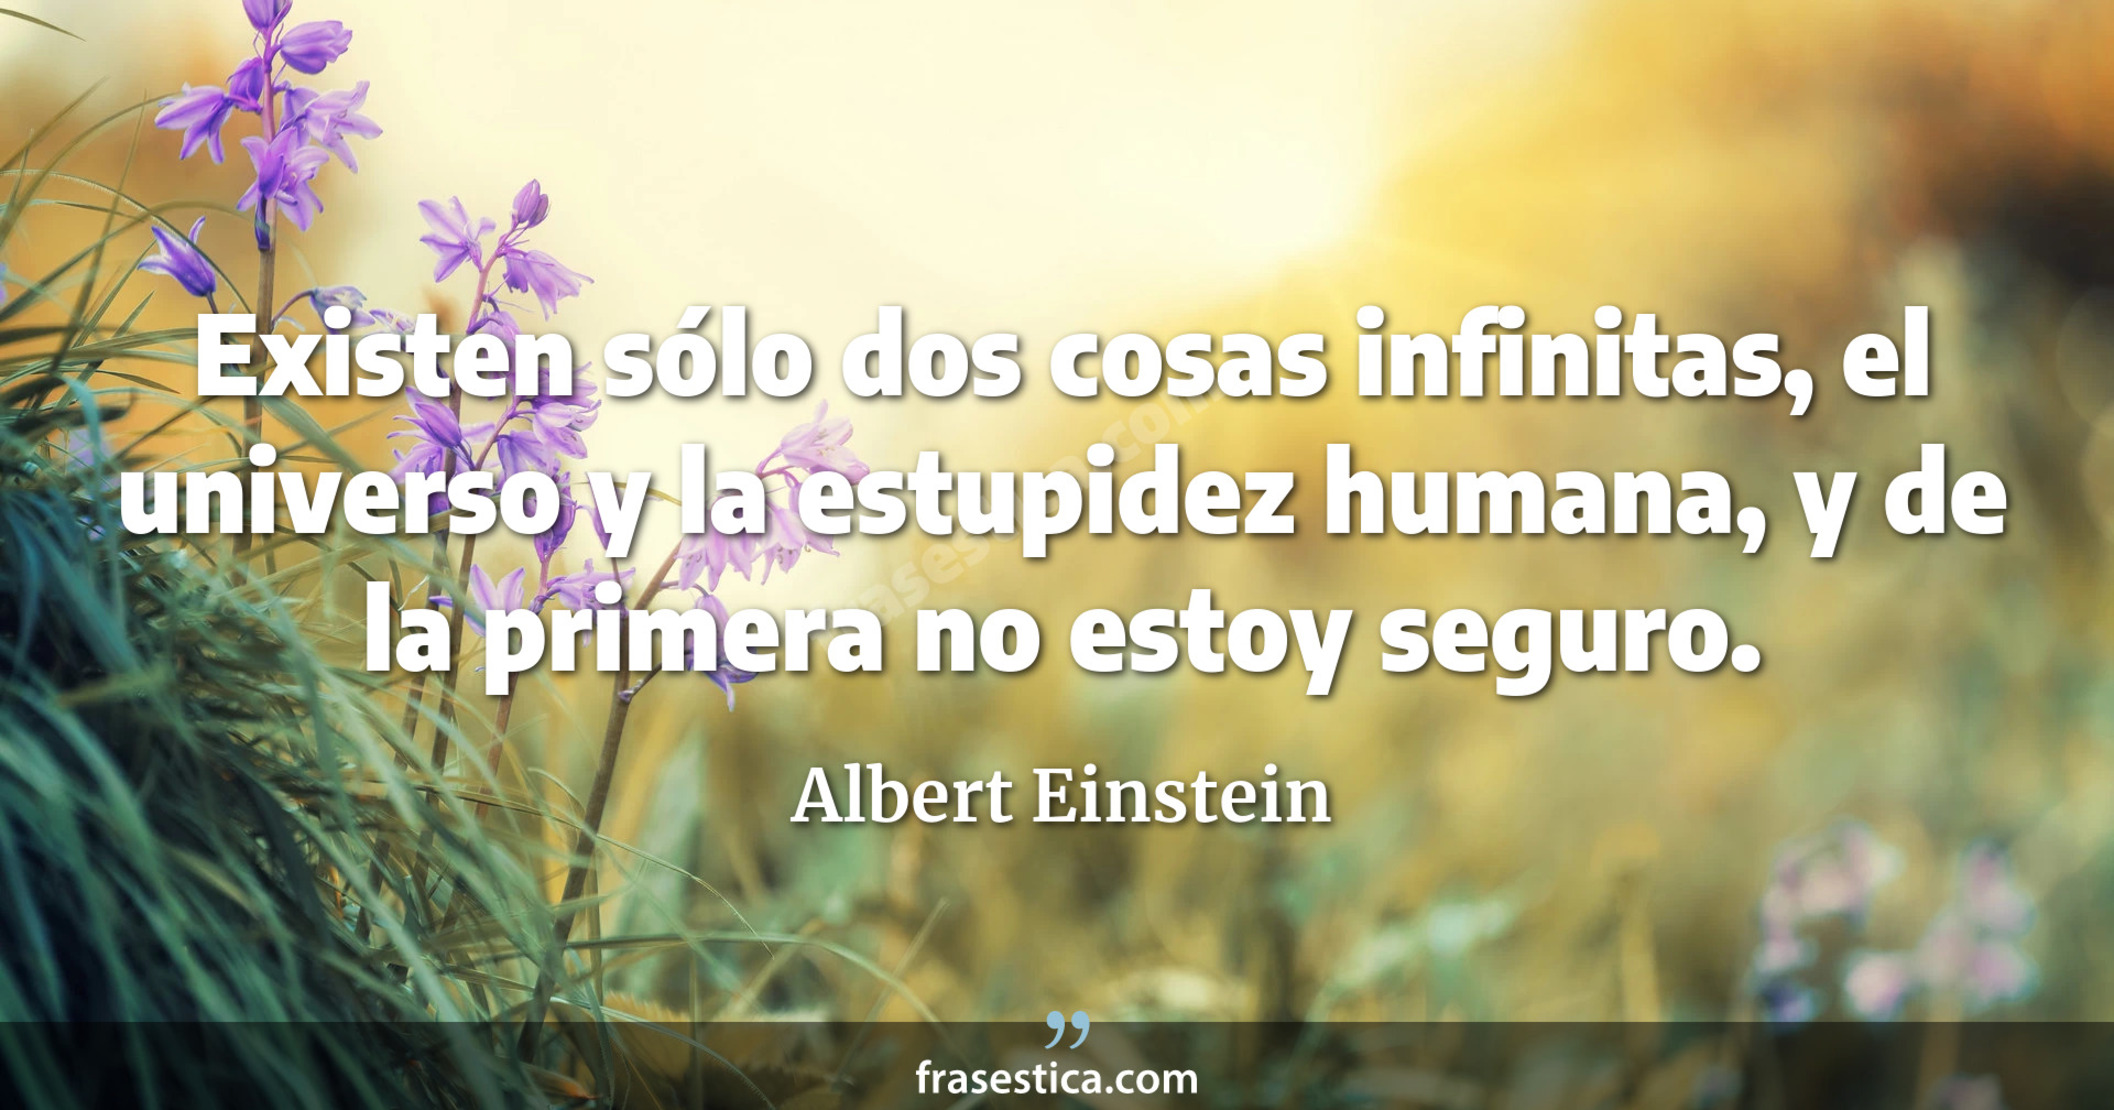 Existen sólo dos cosas infinitas, el universo y la estupidez humana, y de la primera no estoy seguro. - Albert Einstein